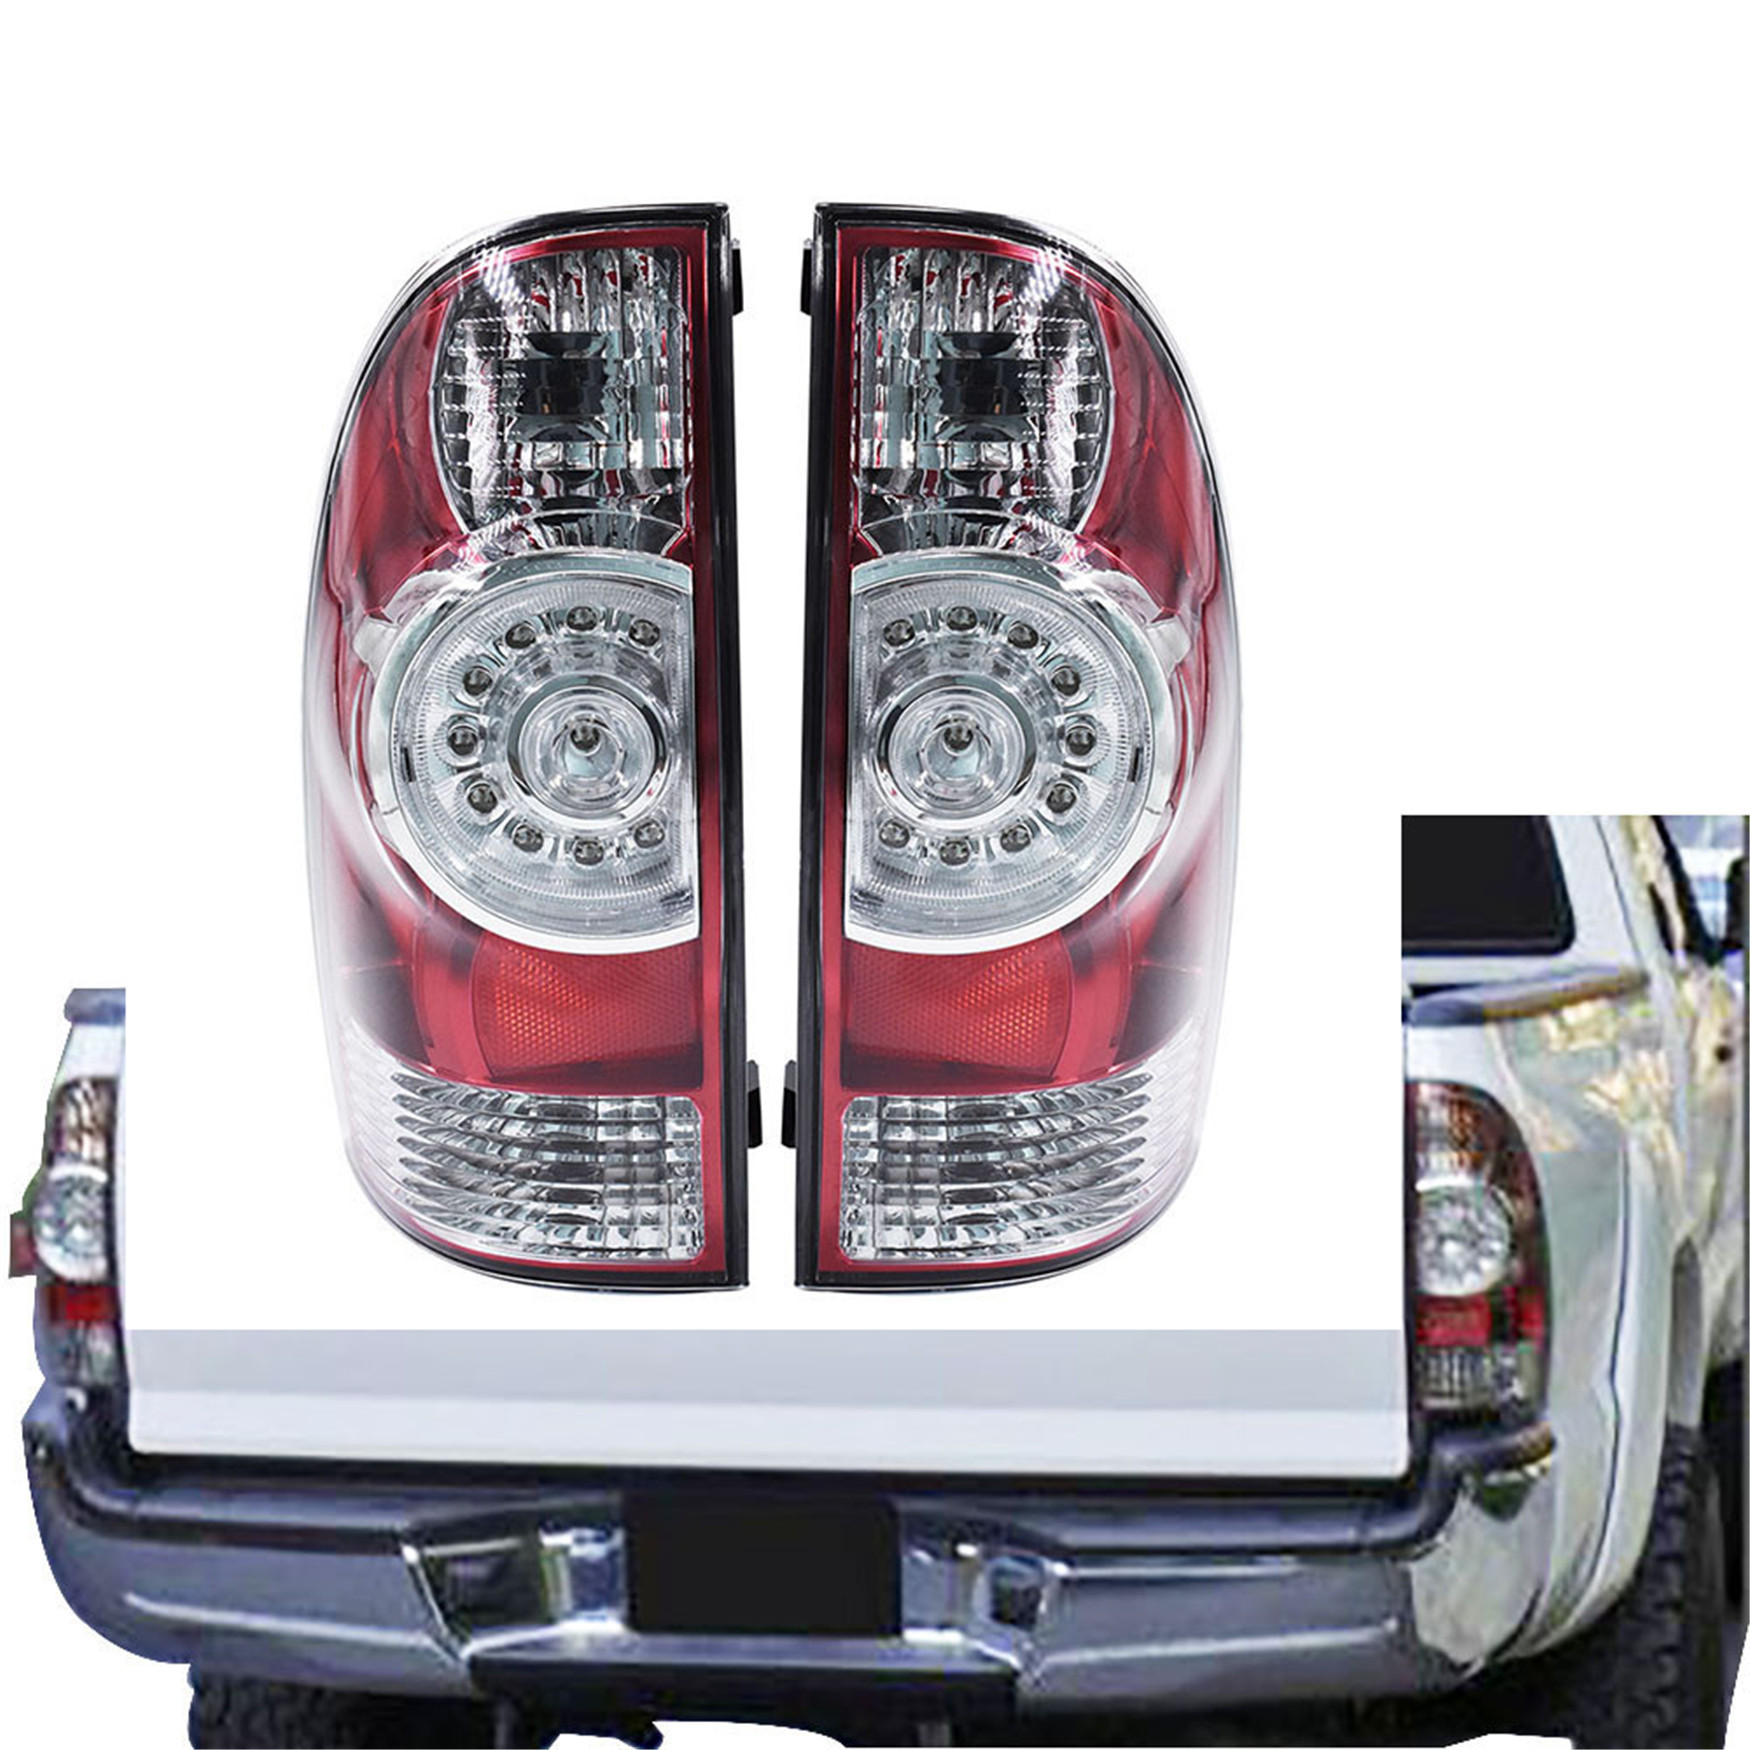 USテールライト 05-15トヨタタコマクロームハウジングレッド3D LEDランニングライトバーテールLmaps FOR 05-15 TOYOTA TACOMA CHROME HOUSING RED 3D LED RUNNING LIGHT BAR TAIL LMAPS